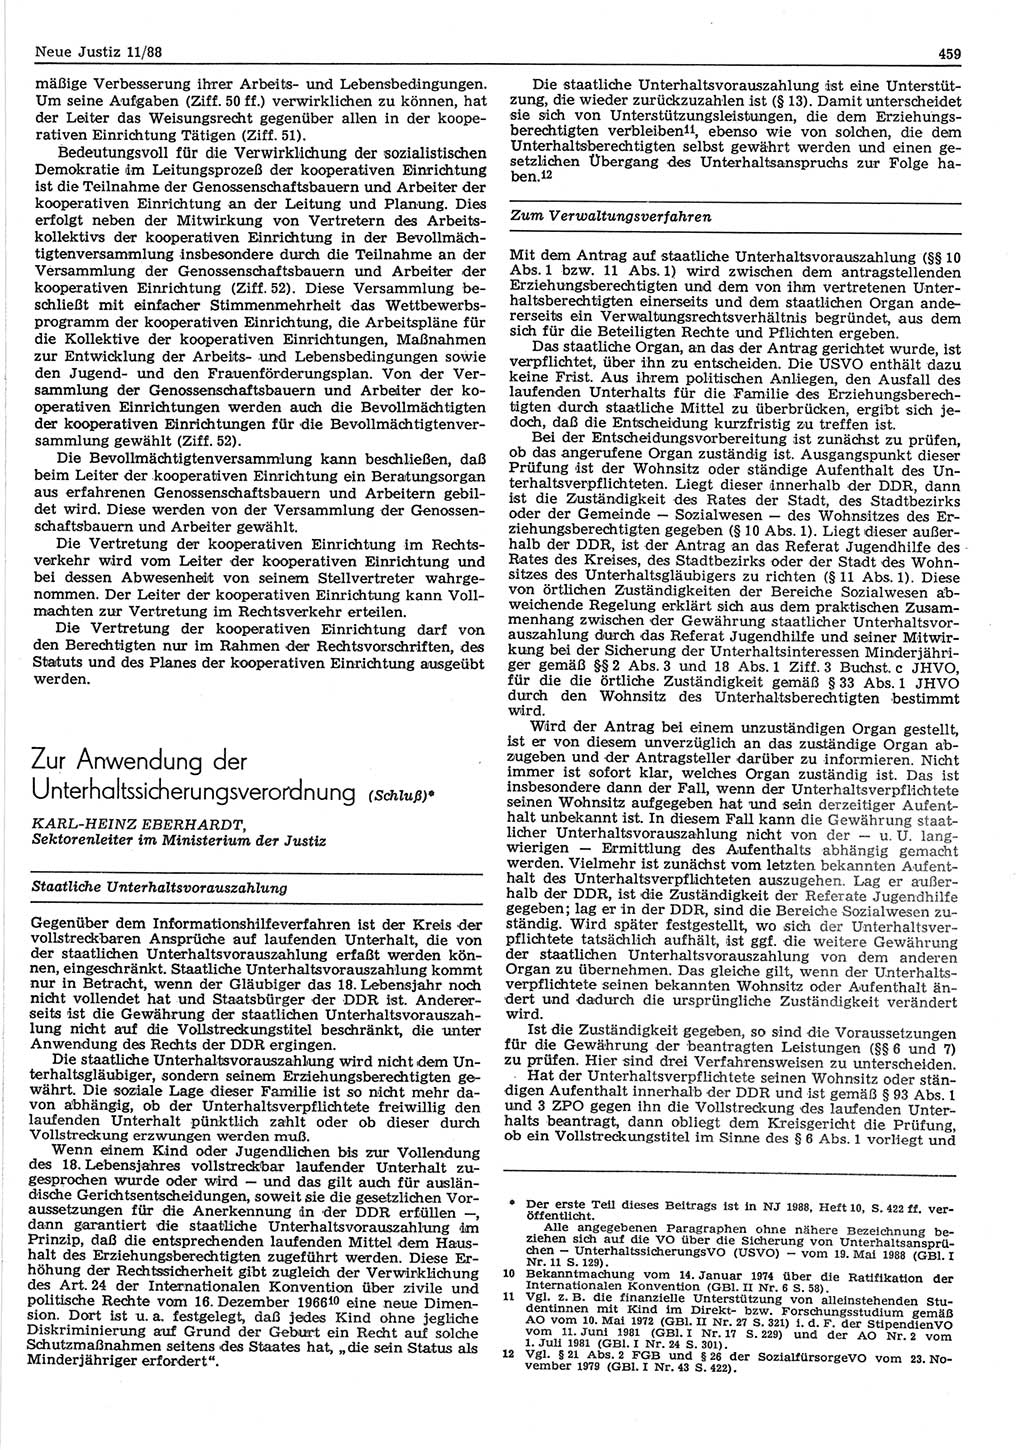 Neue Justiz (NJ), Zeitschrift für sozialistisches Recht und Gesetzlichkeit [Deutsche Demokratische Republik (DDR)], 42. Jahrgang 1988, Seite 459 (NJ DDR 1988, S. 459)